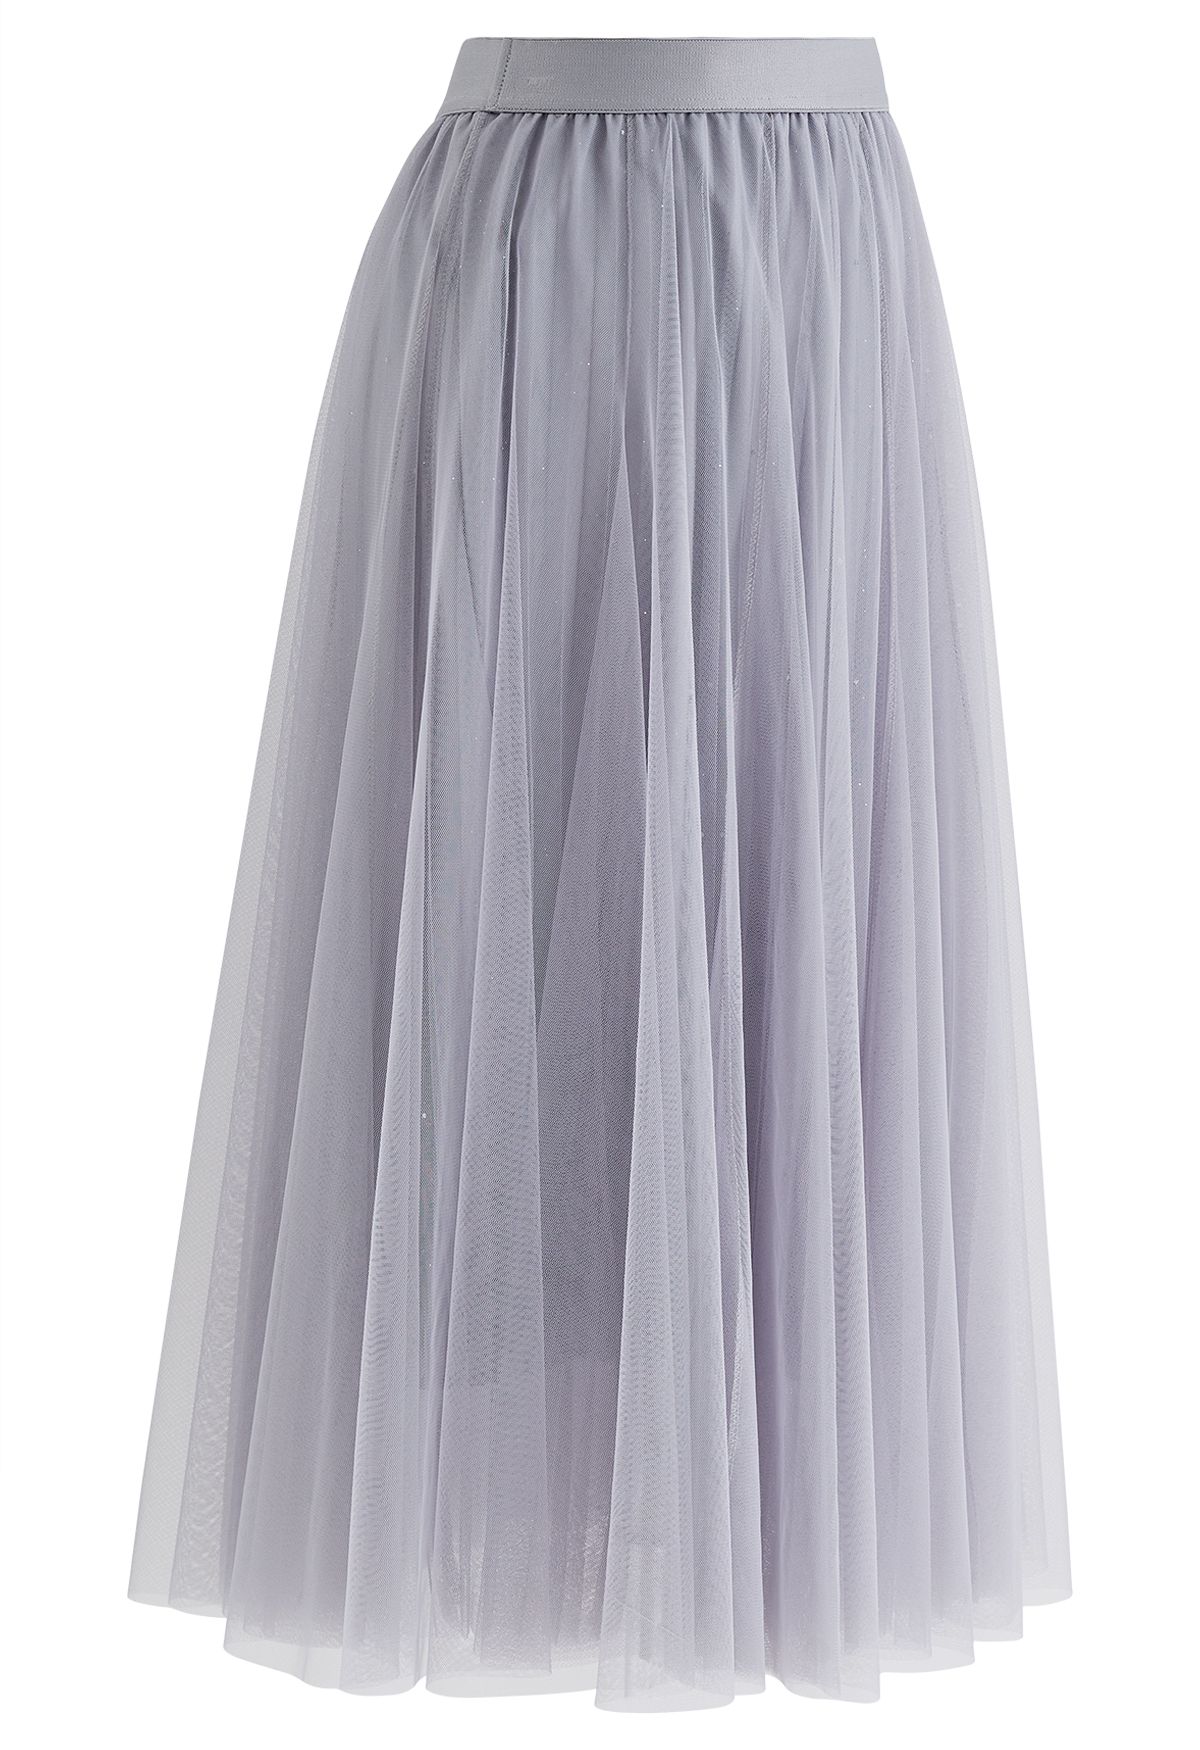 Venus Glitter Mesh Tulle Midi Skirt in Grey